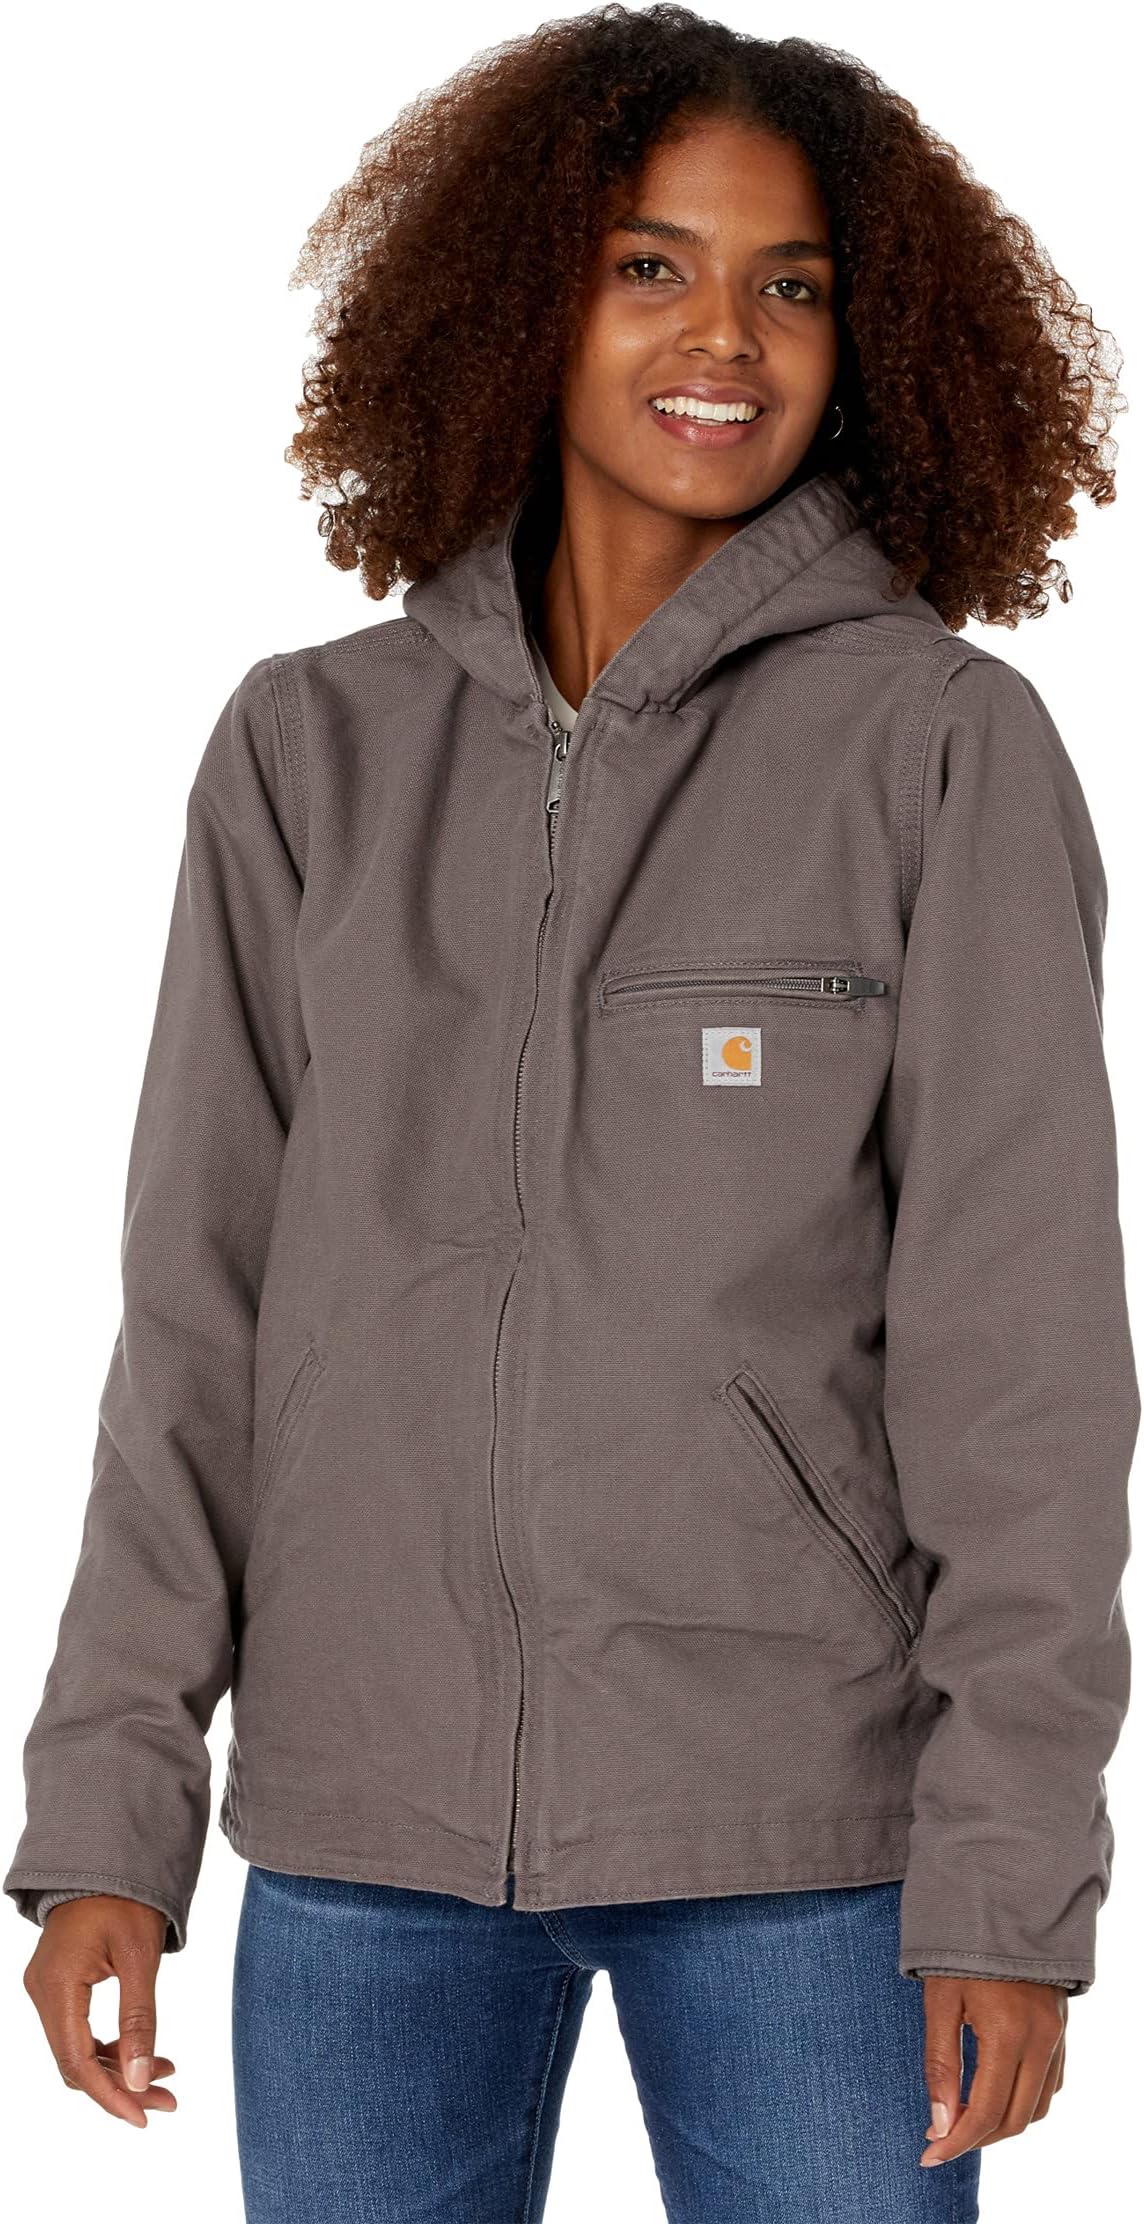 Куртка OJ141 Sherpa Lined Hooded Jacket Carhartt, цвет Taupe Gray